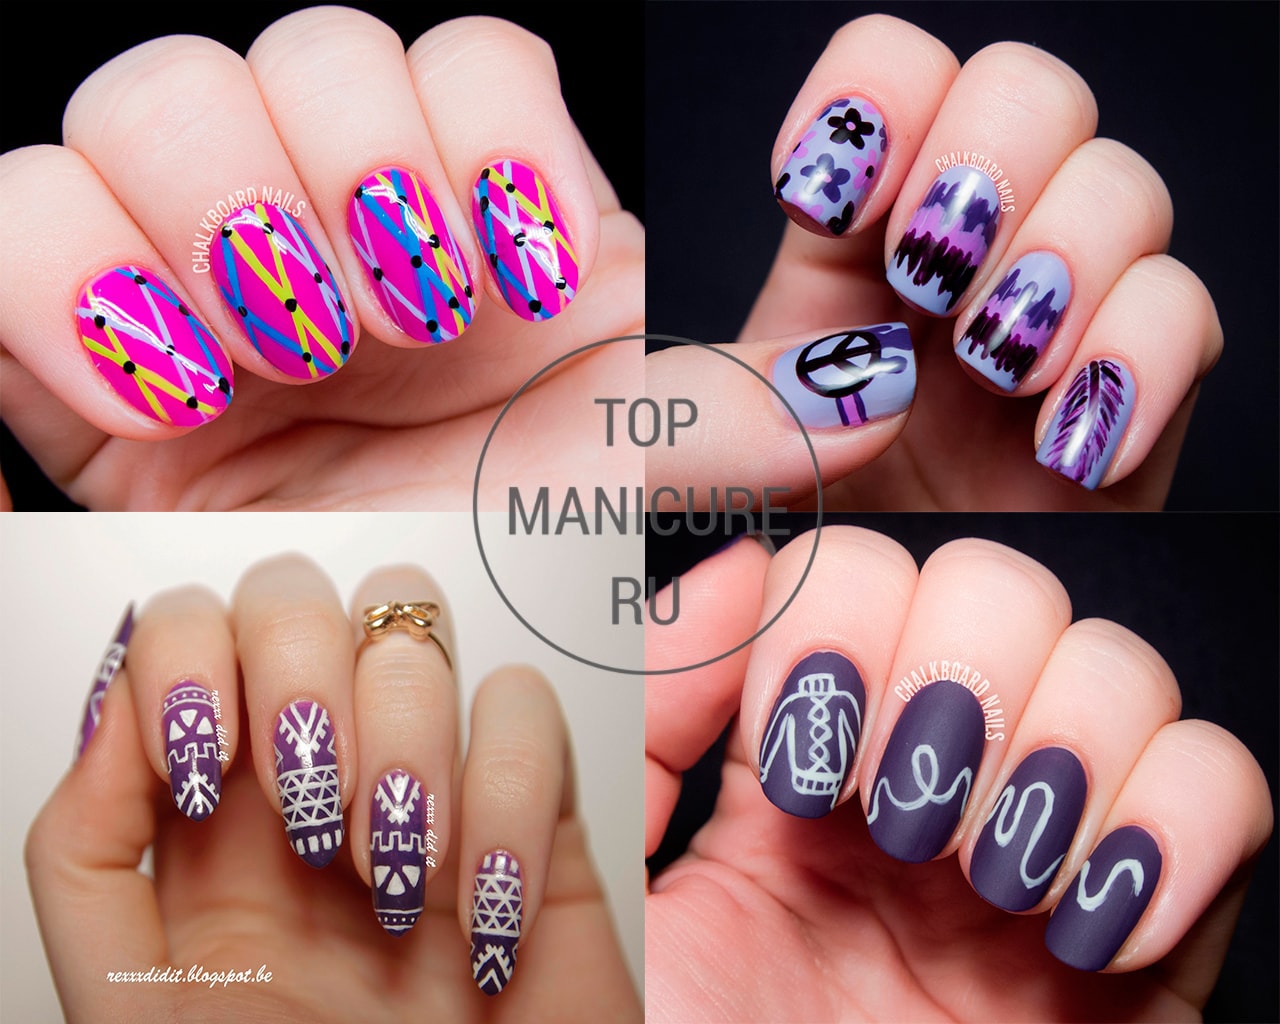 Фиолетовый дизайн ногтей